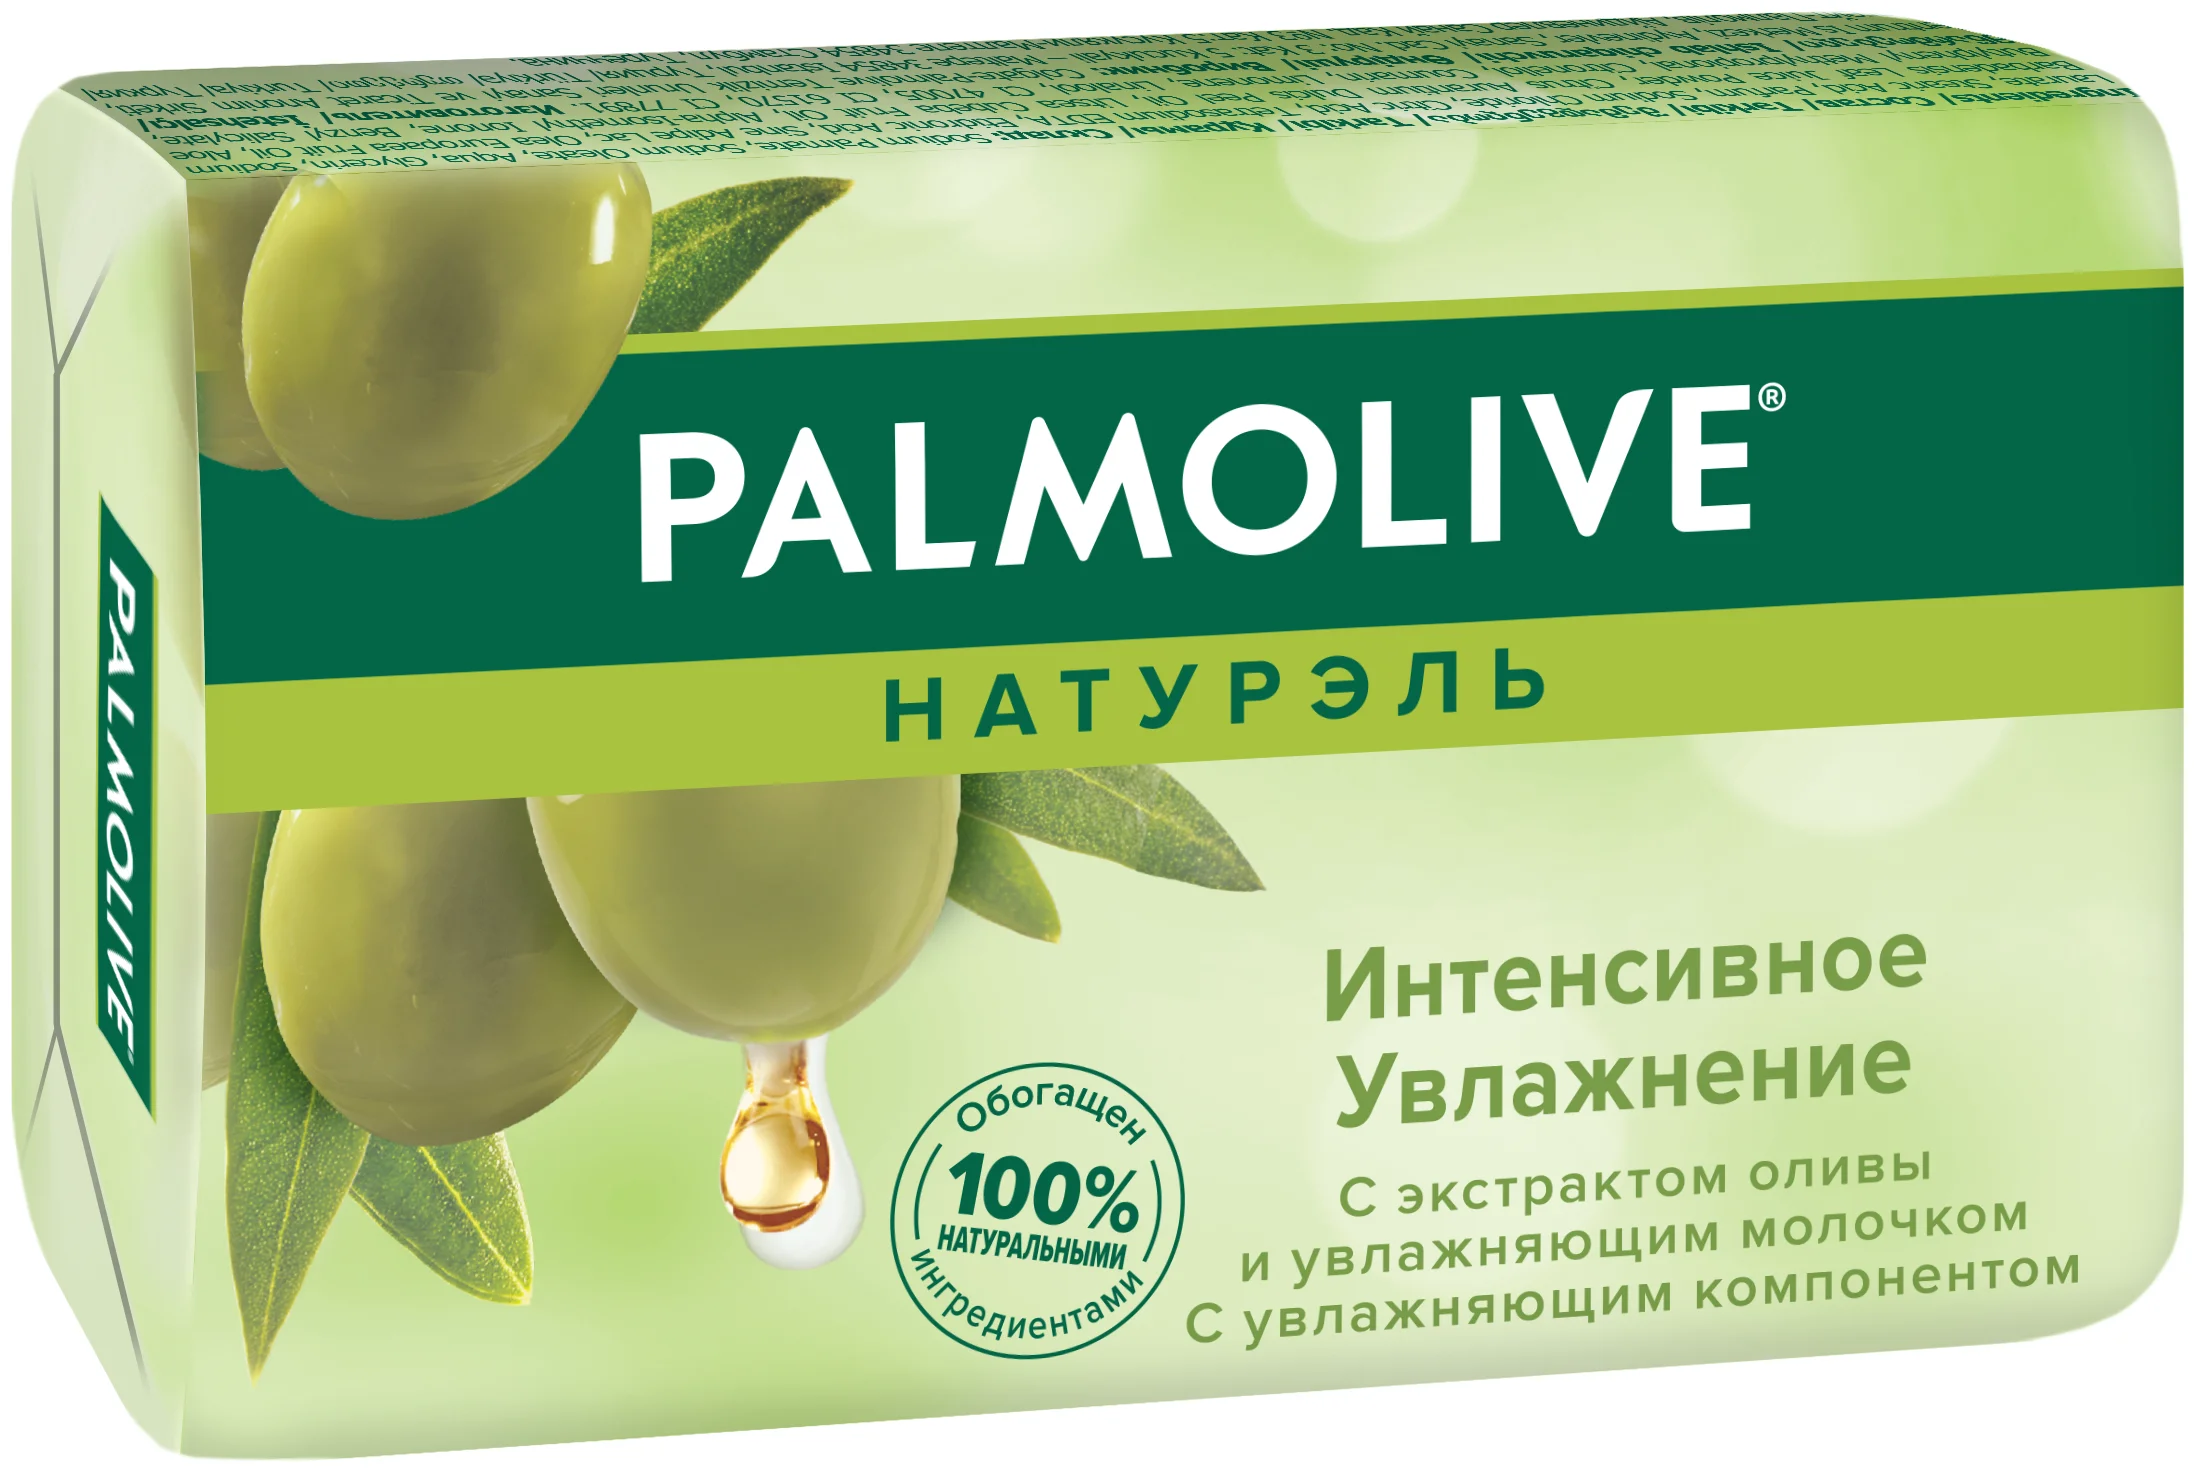 Мыло туалетное Palmolive натурэль Интенсивное увлажнение, олива, 90г.